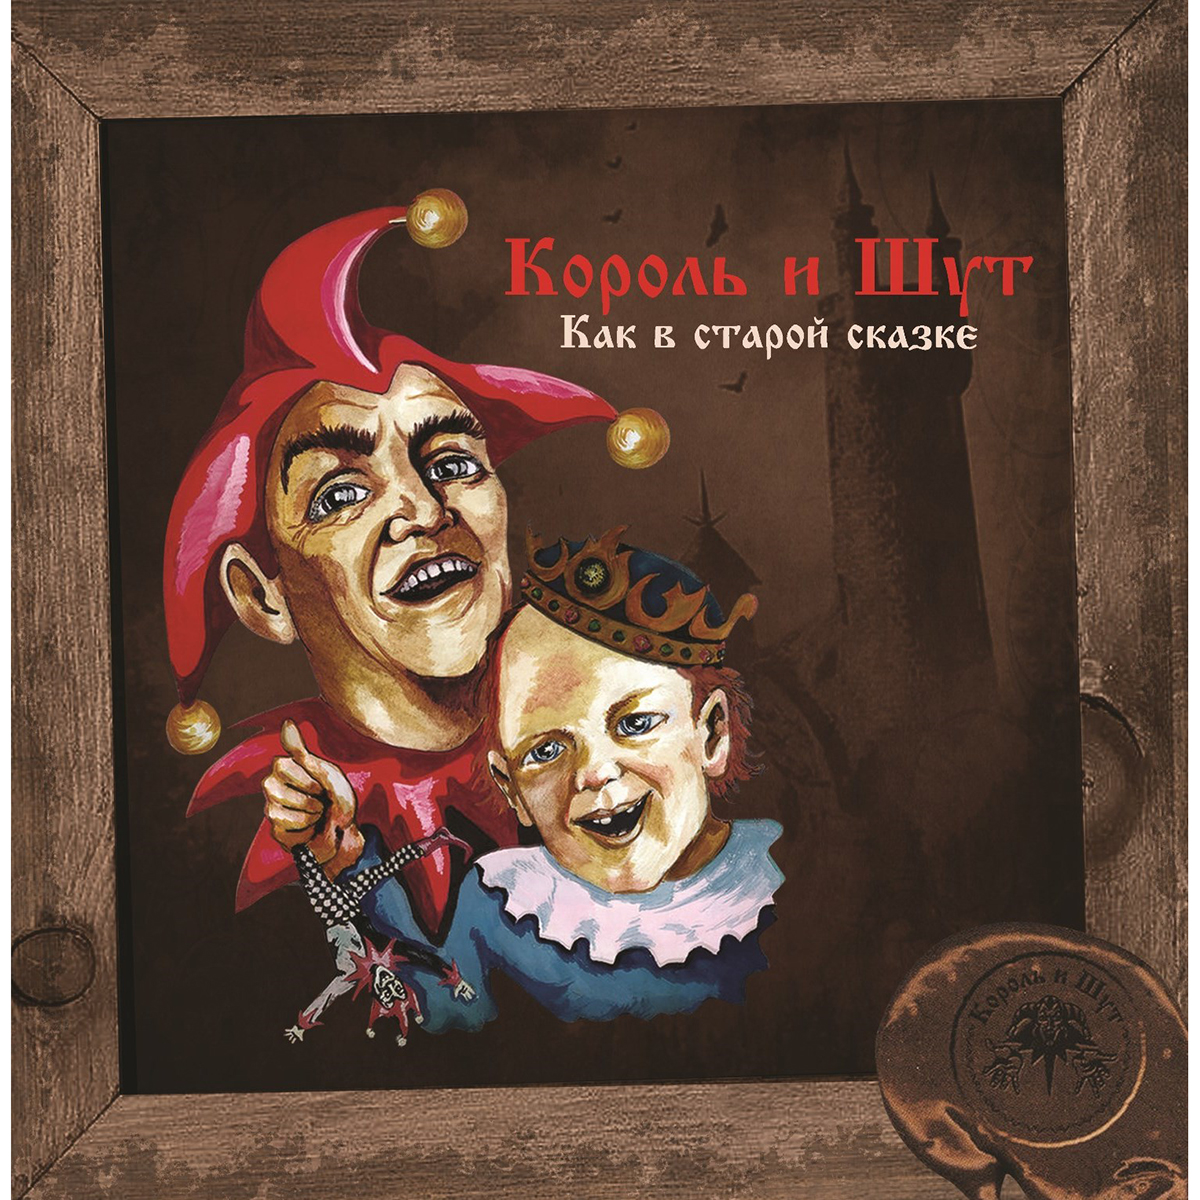 Король И Шут - Как В Старой Сказке [Black Vinyl + Постер] (UMG23 LP-5265)